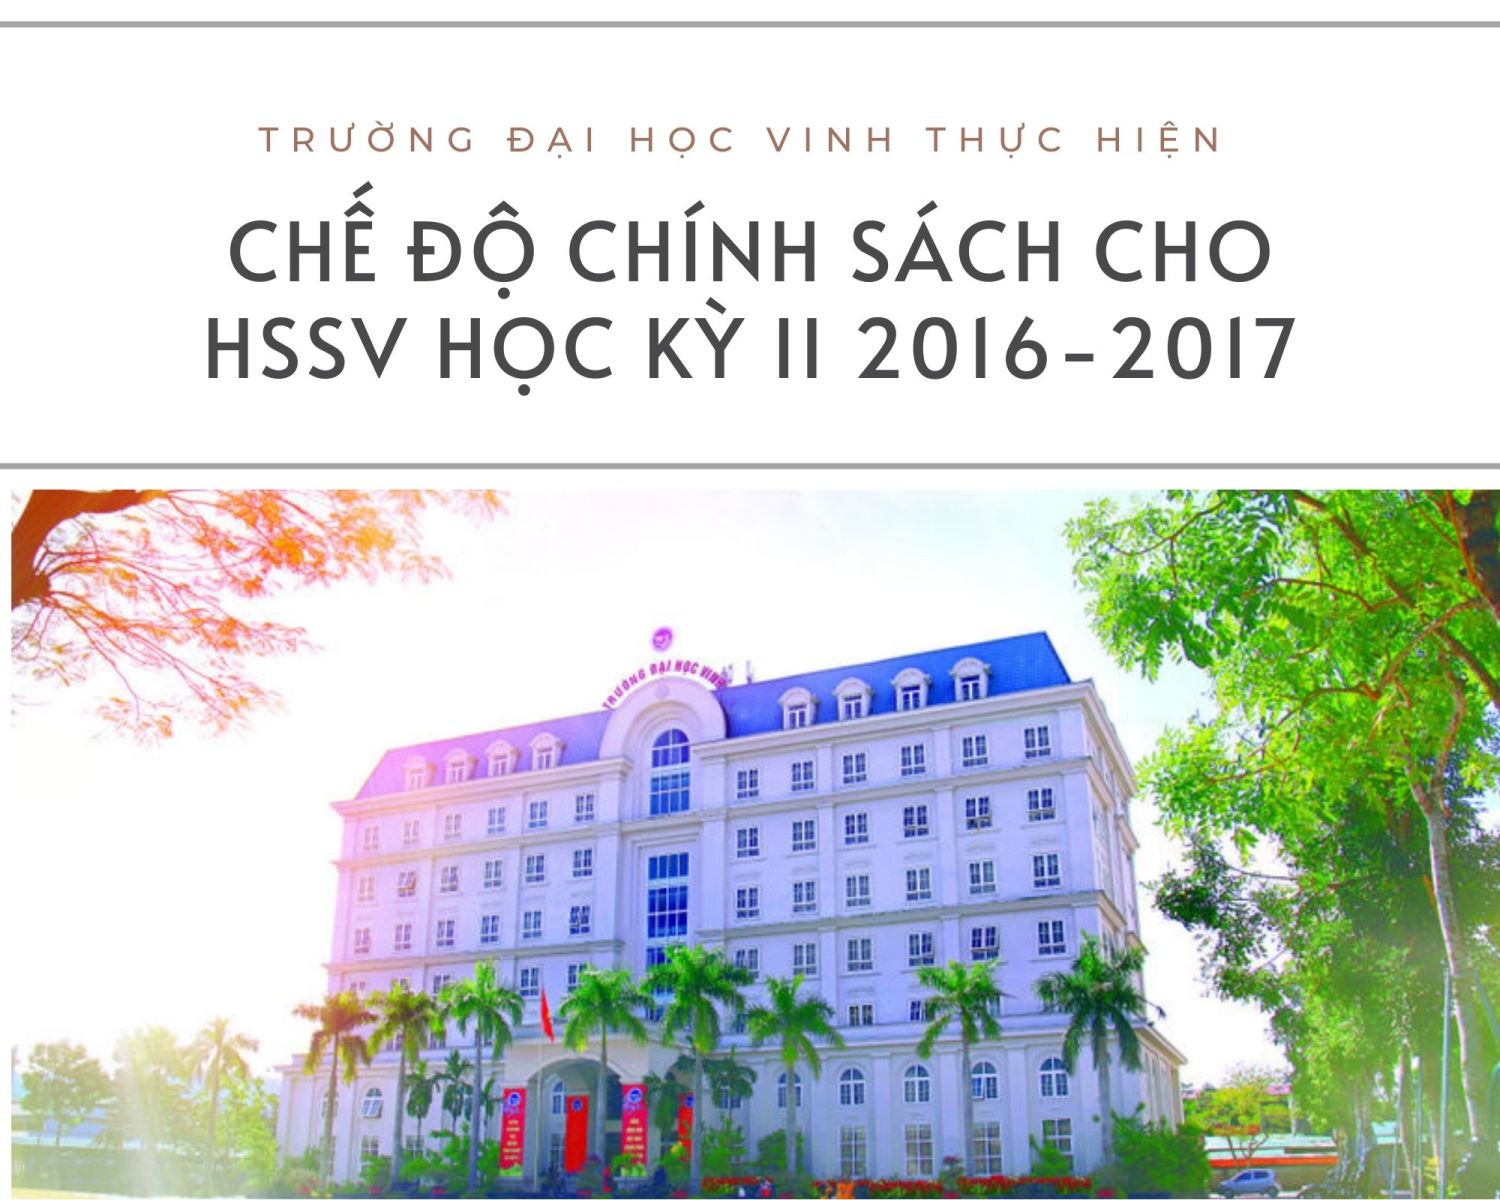 Trường Đại học Vinh thực hiện chế độ chính sách đối với học sinh, sinh viên học kỳ 2 năm học 2016 - 2017